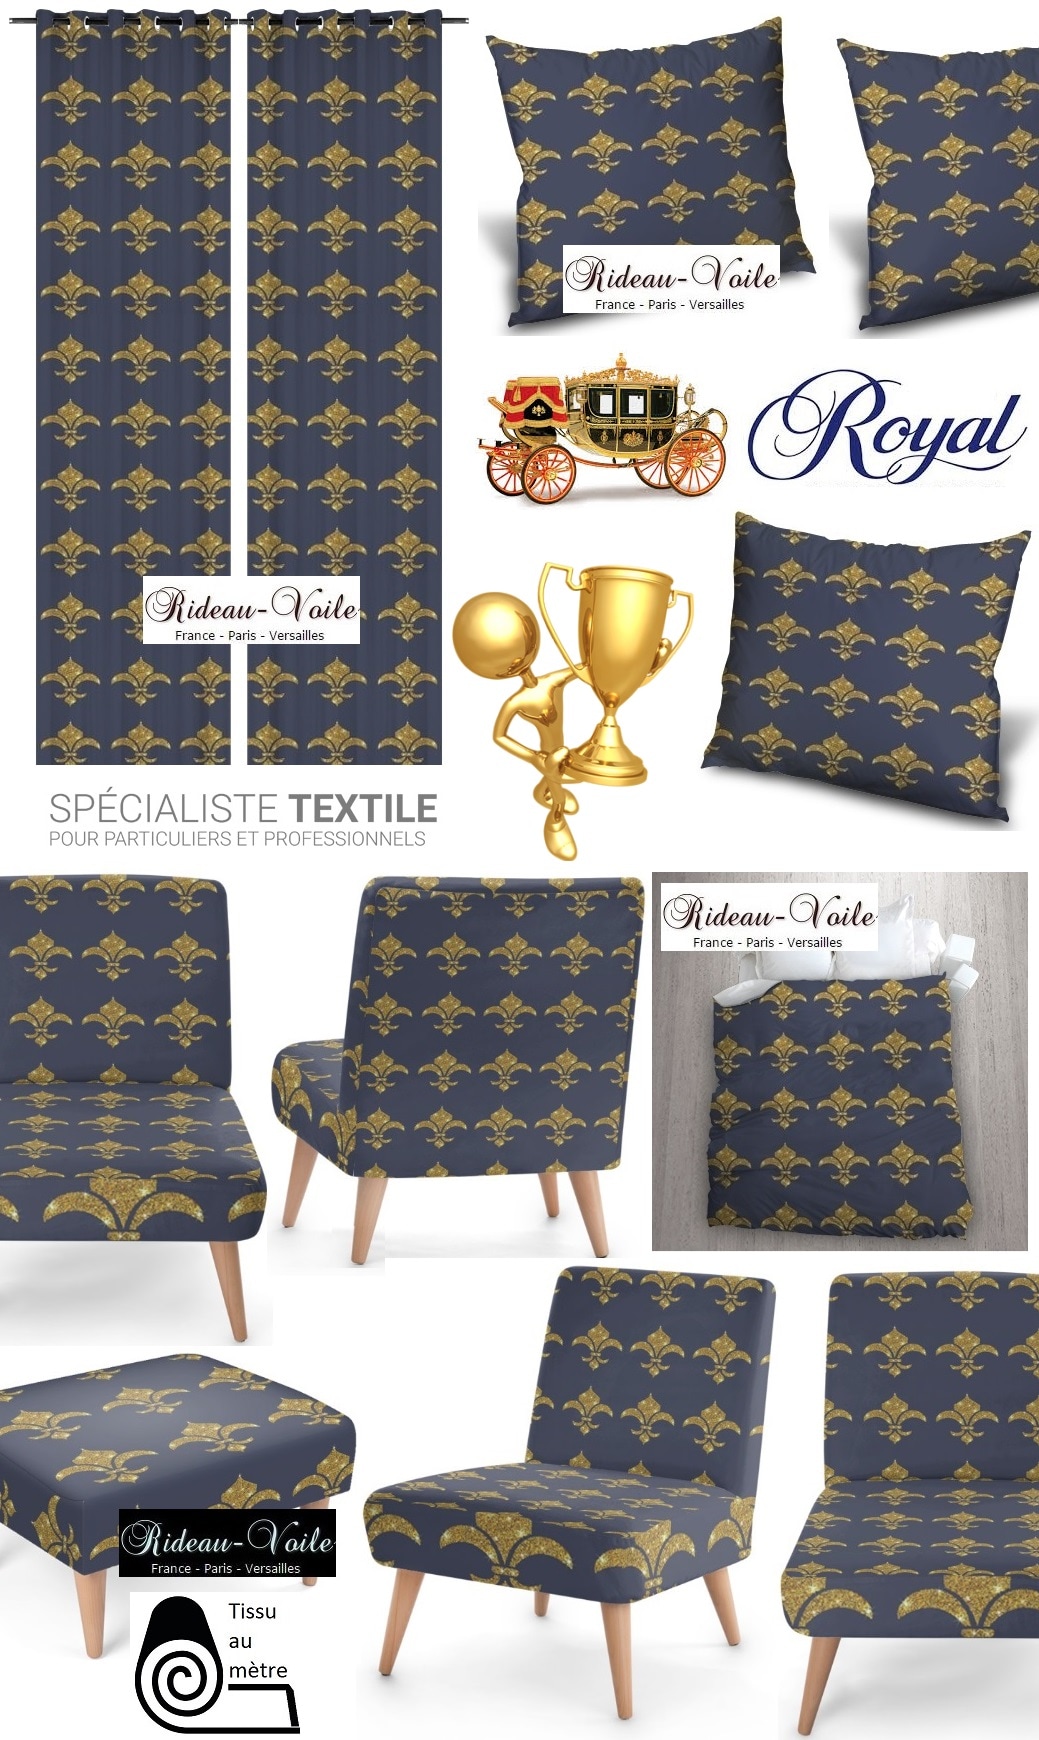 emblème royal fauteuil siège rideau coussin tapisserie garnissage décoration décorateur style Empire fleur de lys or bleu déco luxe Paris Versailles Quebec